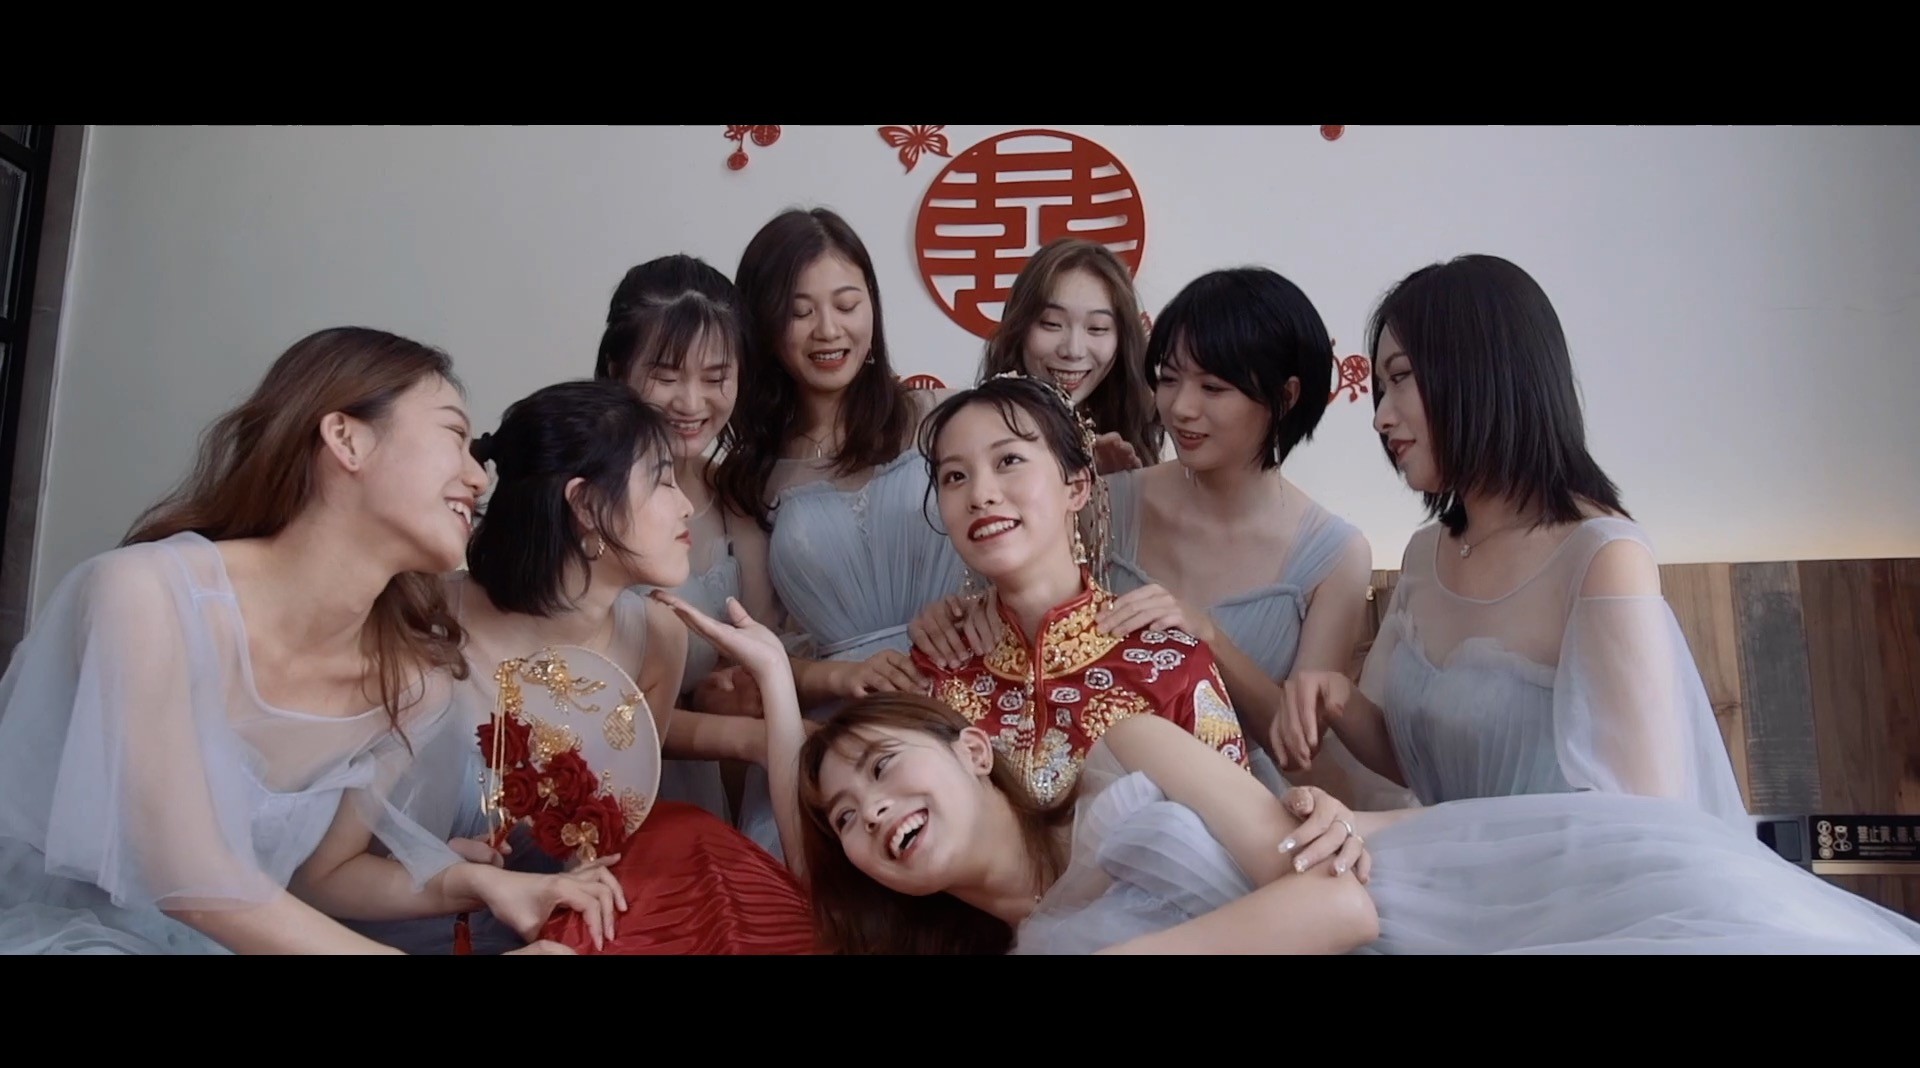 婚礼双机位MV-RED film studio 瑞得影像11.16 